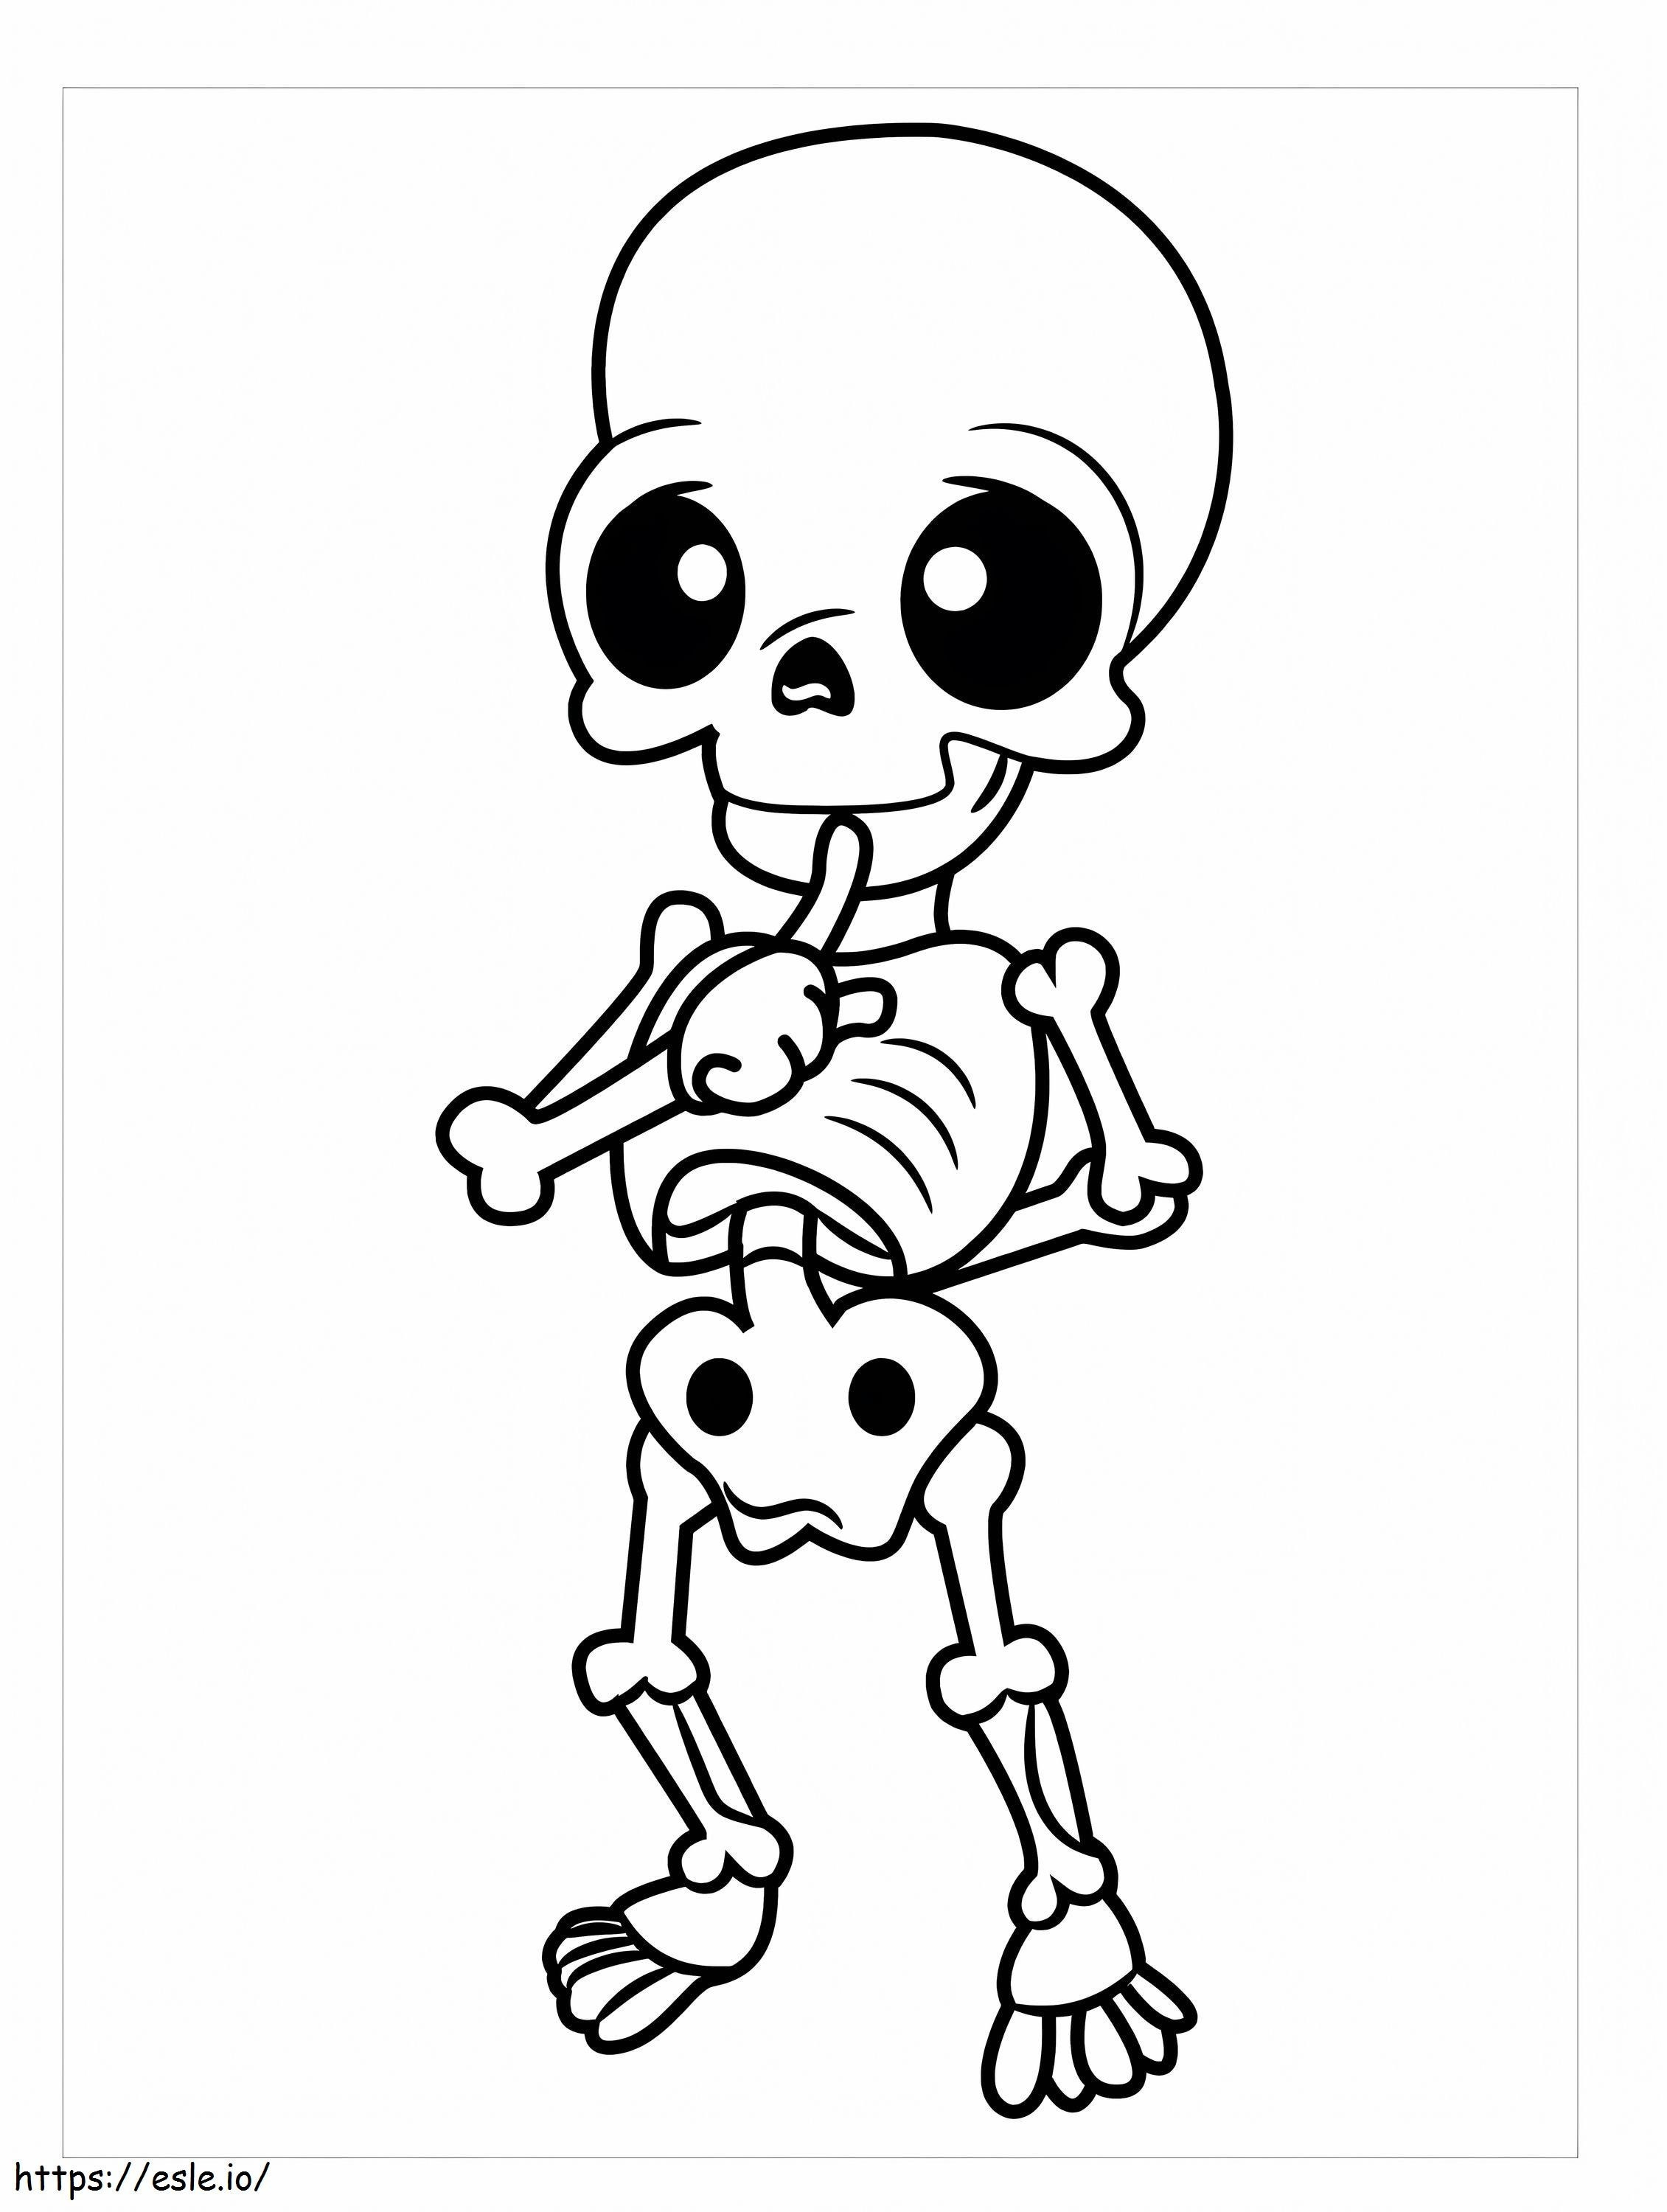 Esqueleto Chibi para colorear